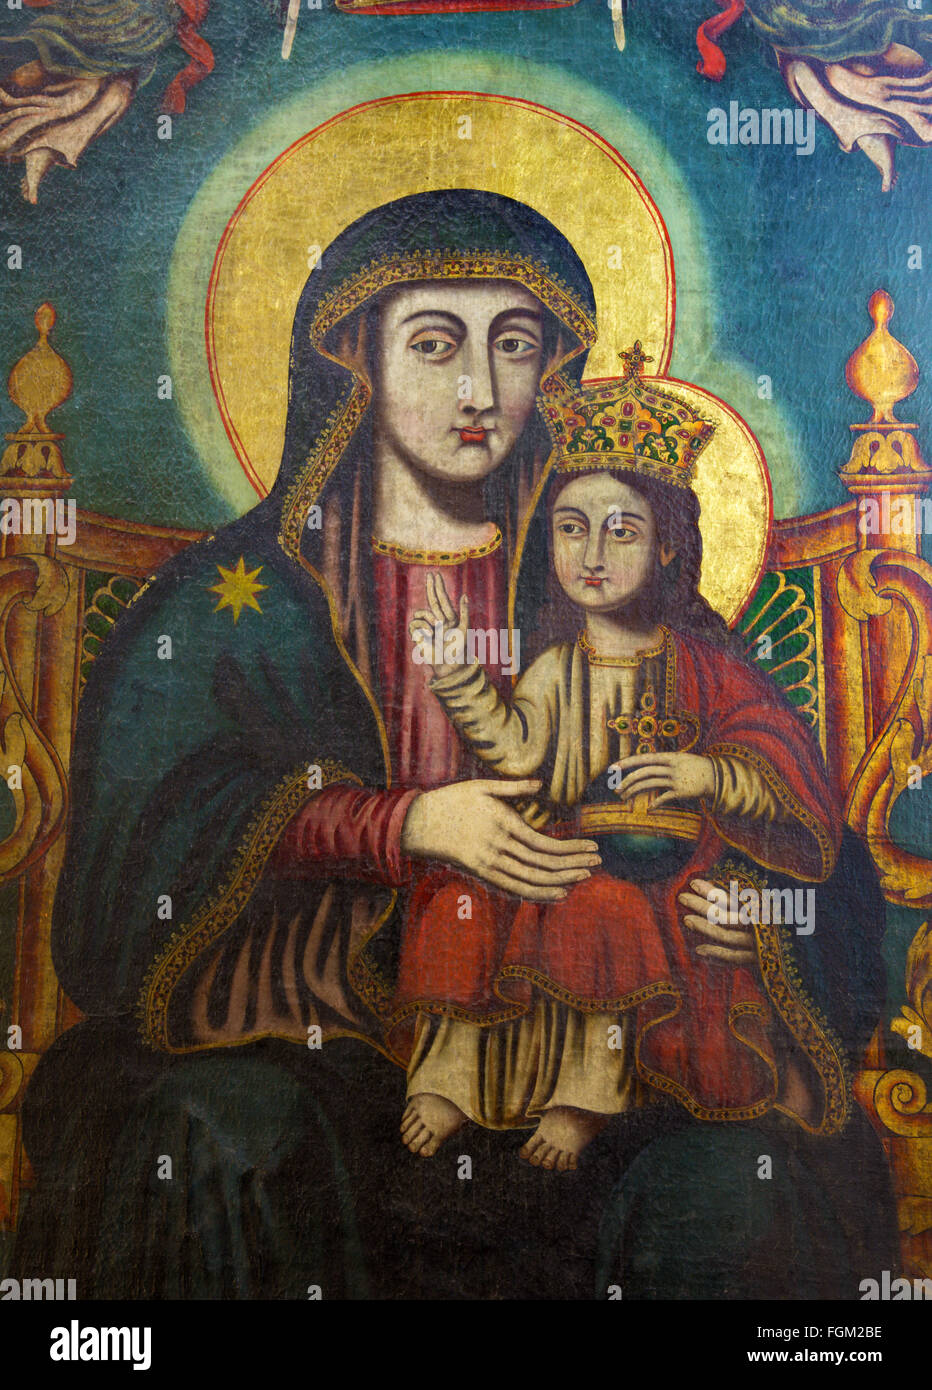 Gerusalemme, Israele - 3 Marzo 2015: l'icona della Madonna dalla chiesa del Santo Sepolcro di artista sconosciuto. Foto Stock